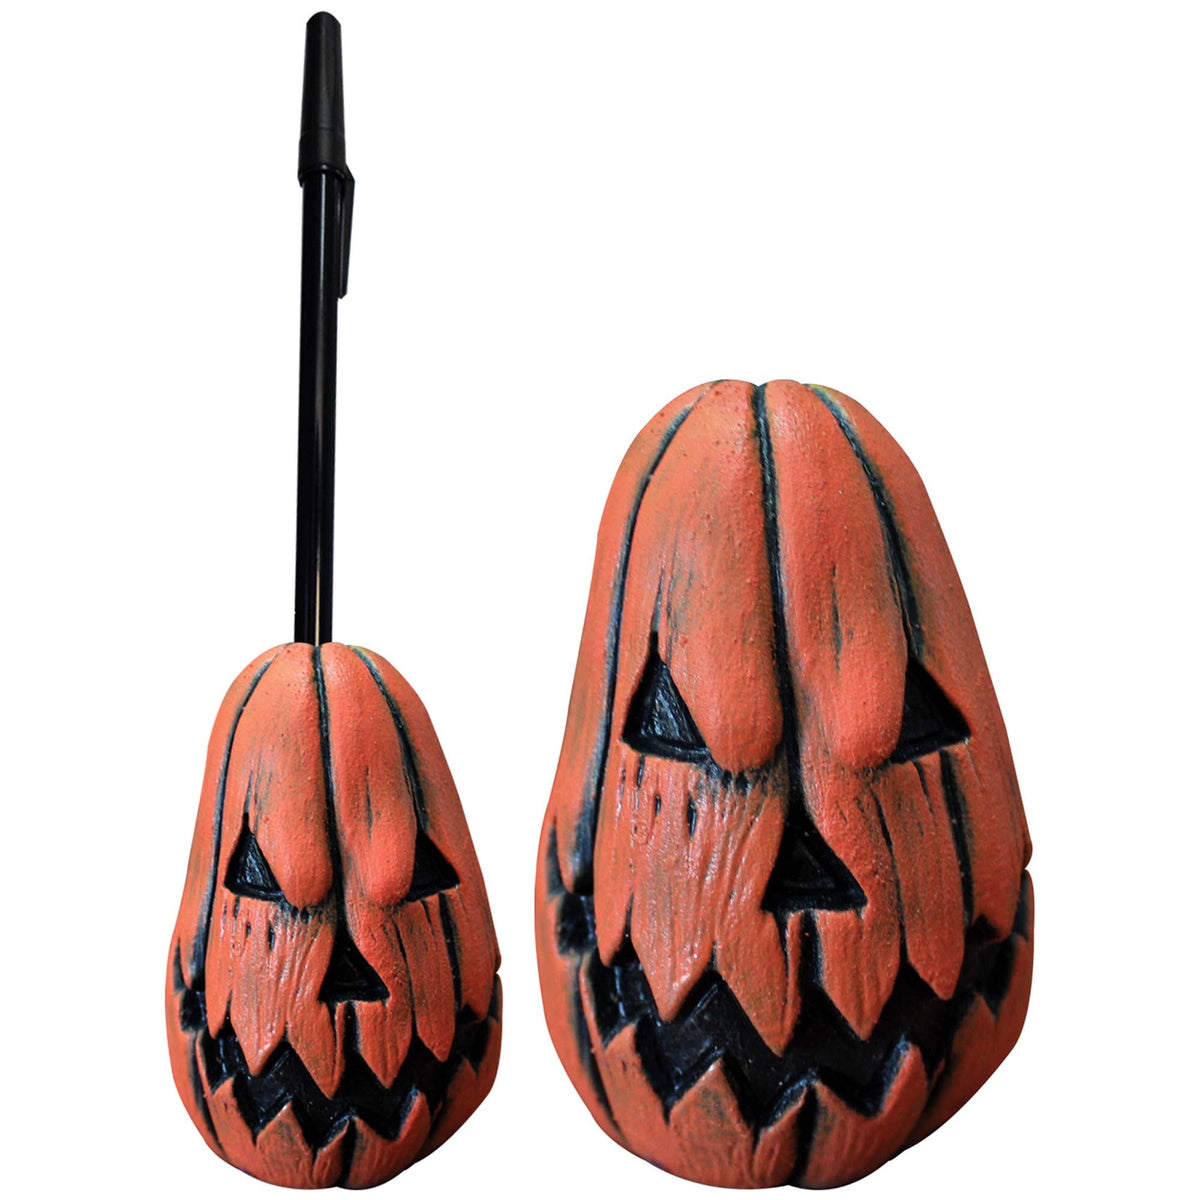 GHOULISH PRODUCTIONS Halloween Halloween Pumpkin Pen Holder, 1 Count 886390277327